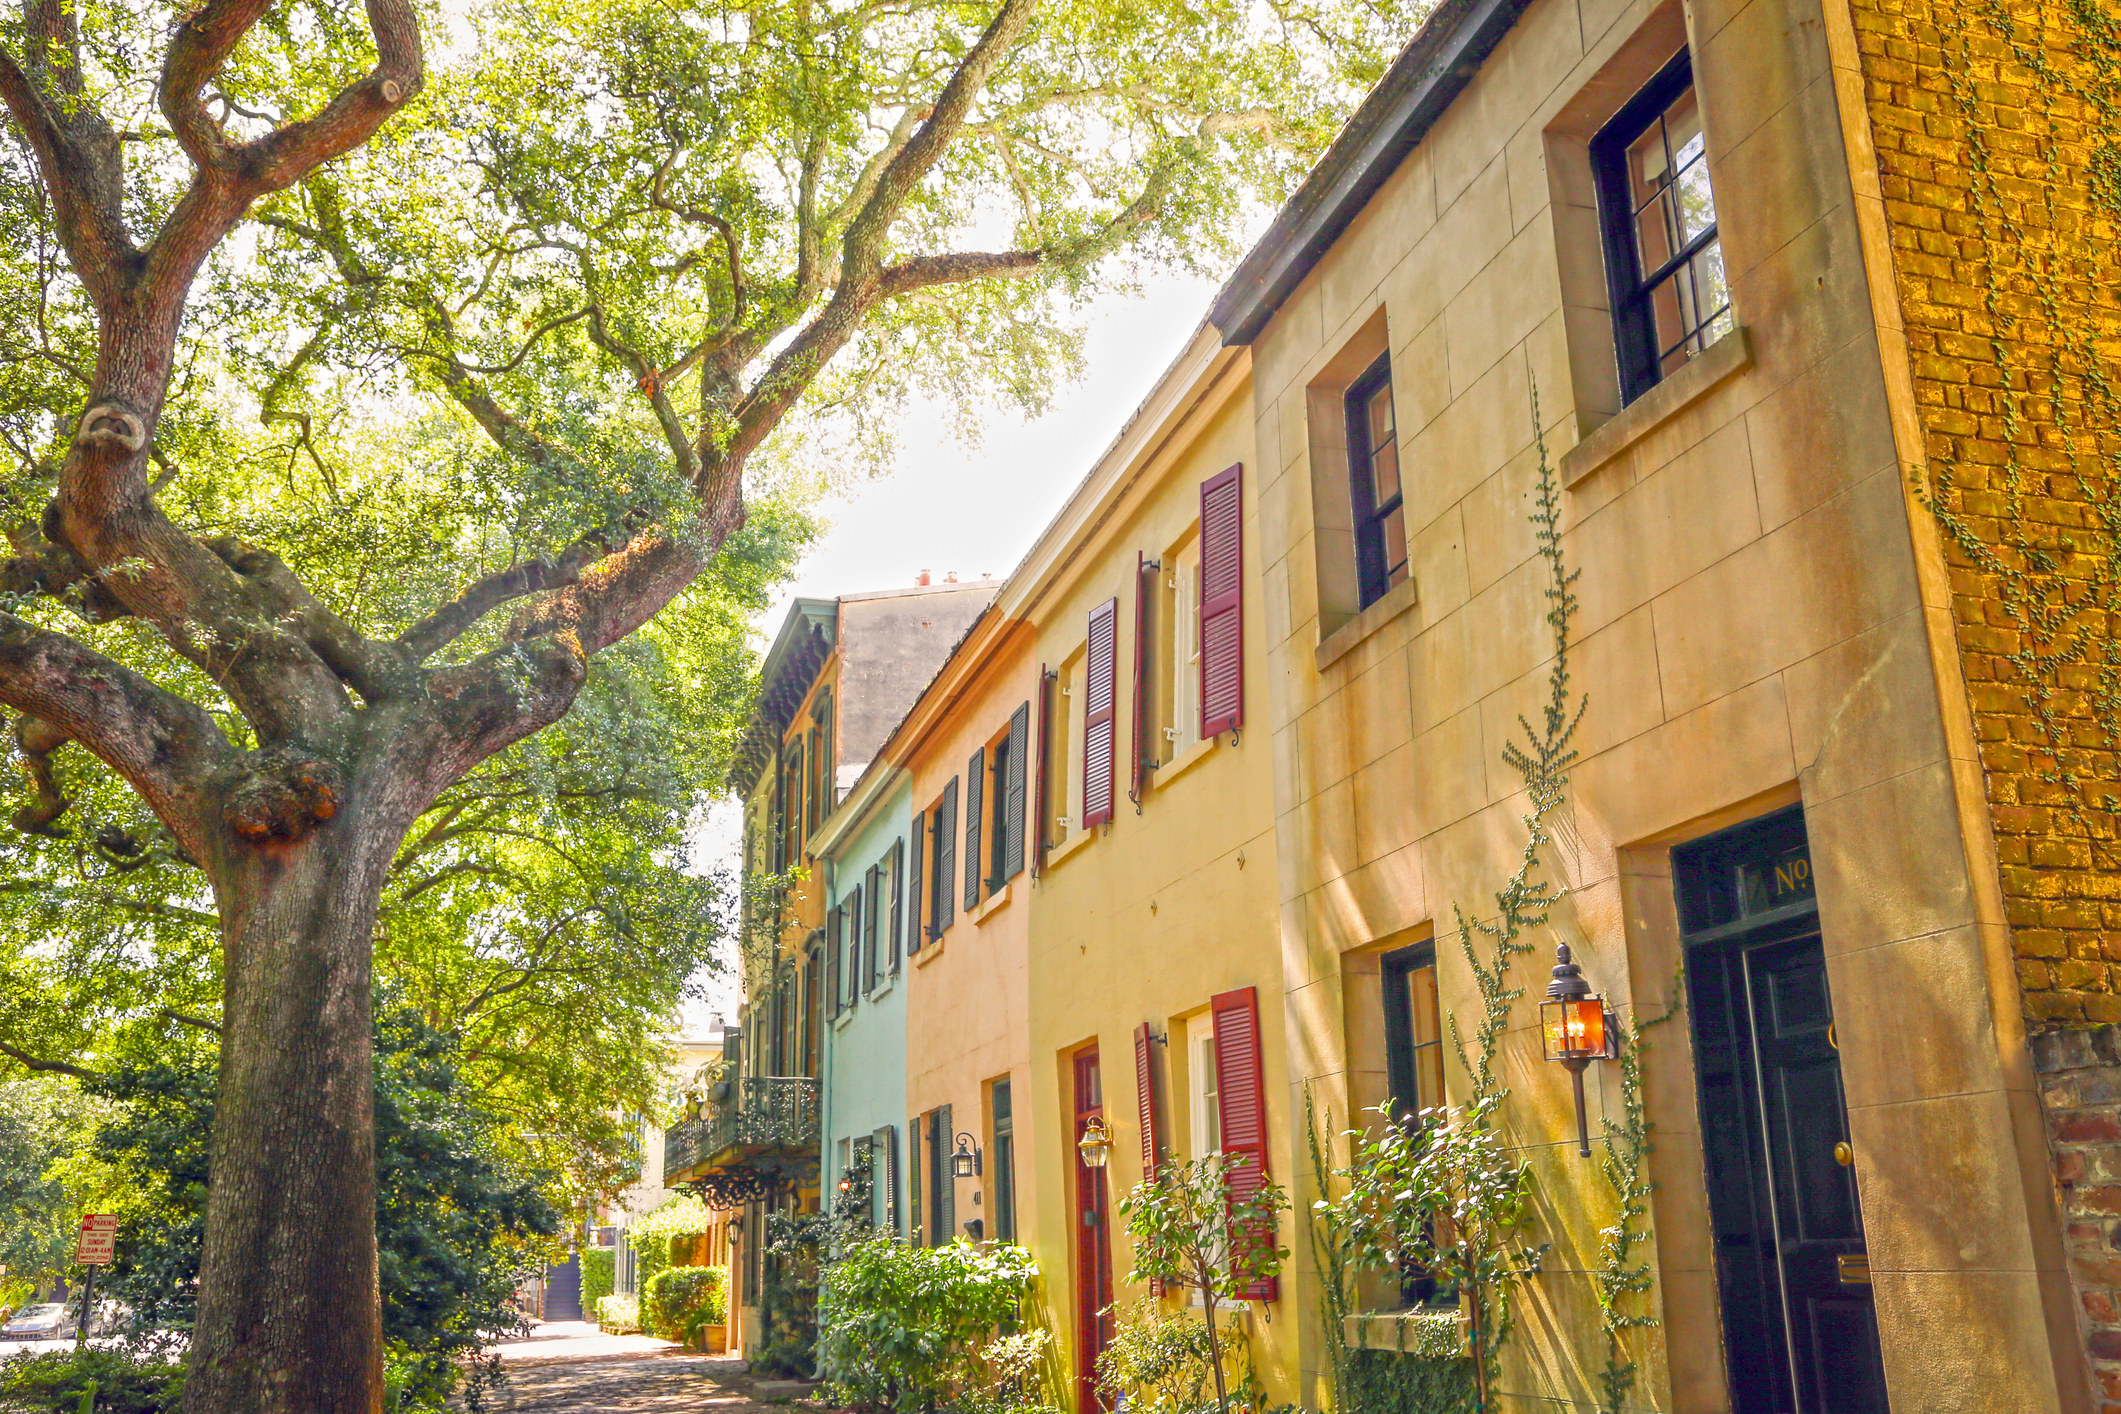 A quiet street in Savannah.